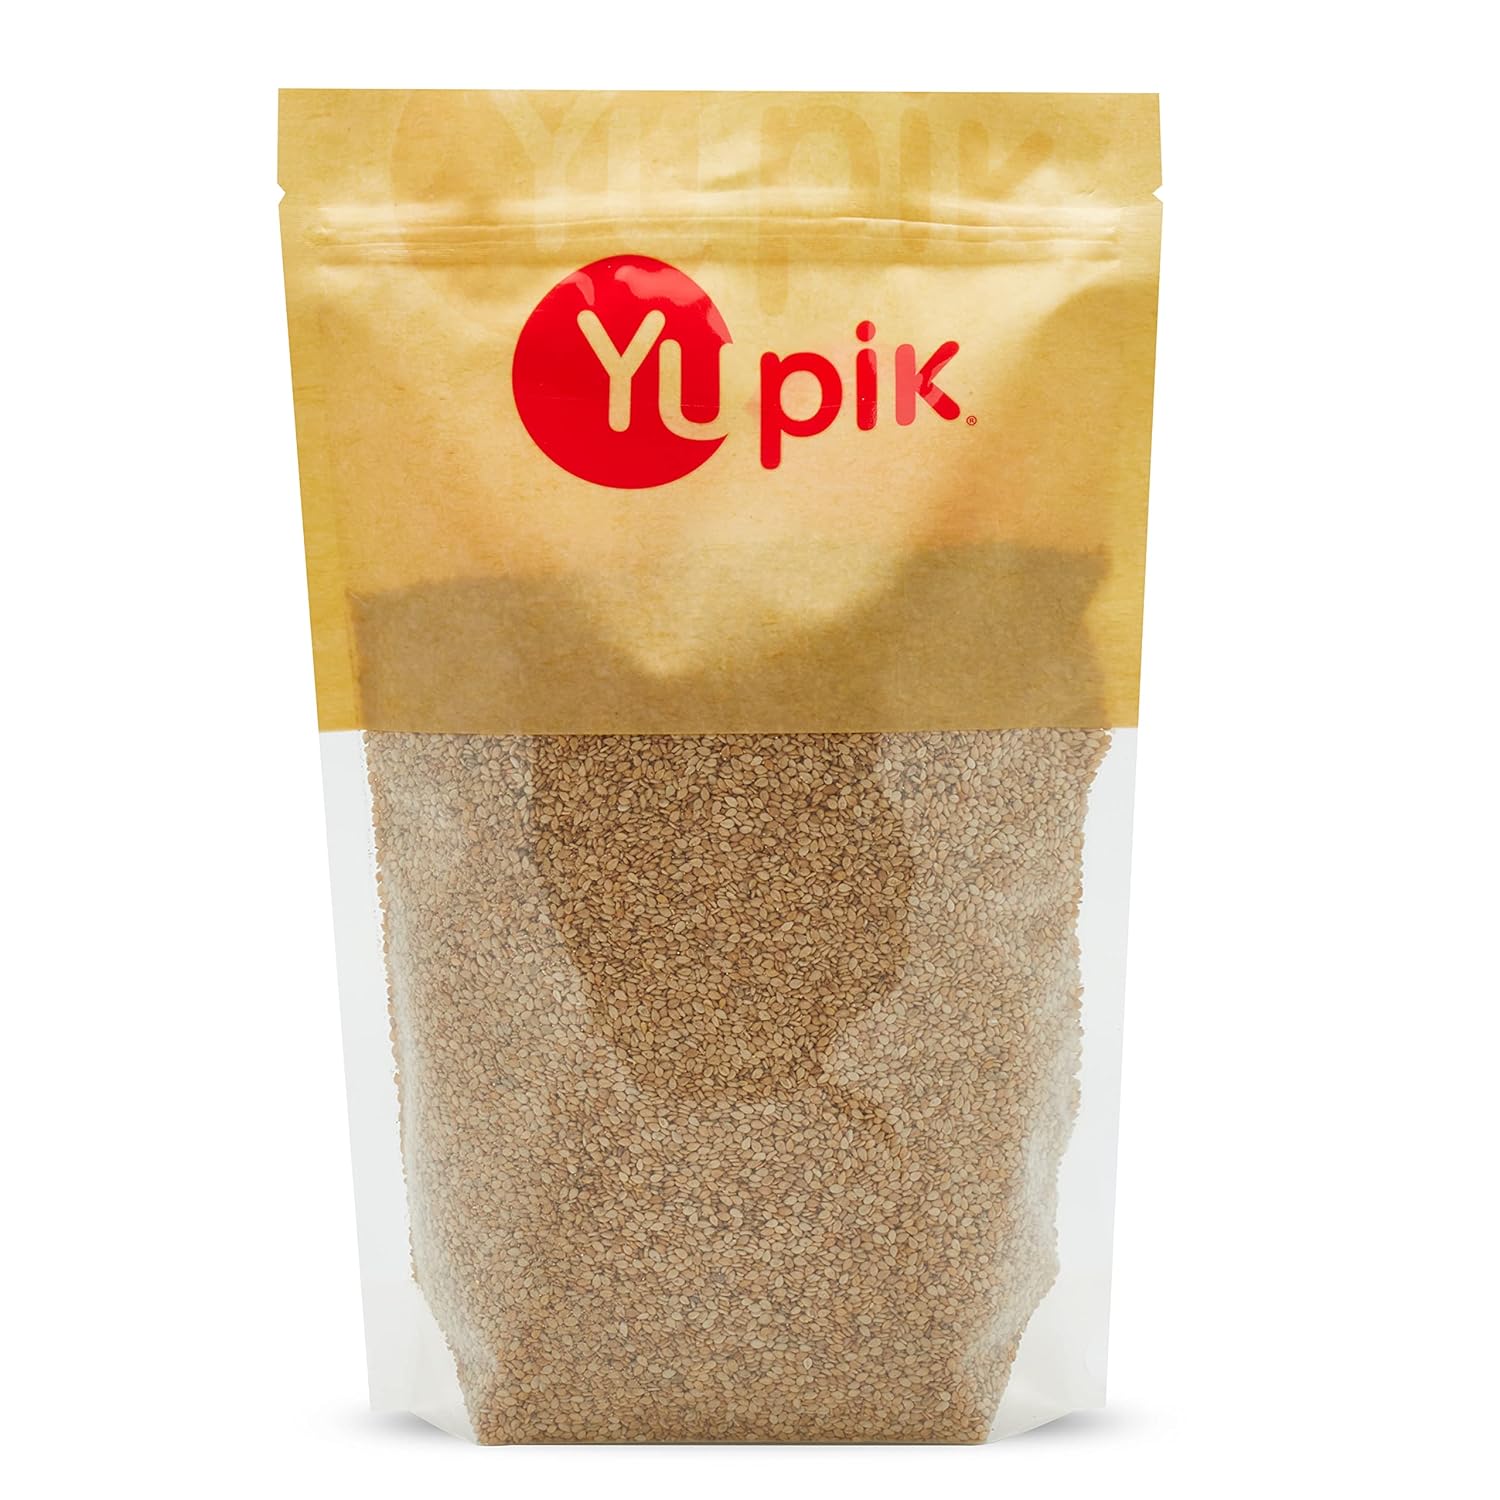 Yupik Whole Sesame Seeds 2.2 lb, Natural, Unhulled, Gluten-Free, Kosher, Vegan, Raw, Source of Protein, Fiber & Iron, Cholesterol-free, Sugar-free, Low-Carb, Pack of 1